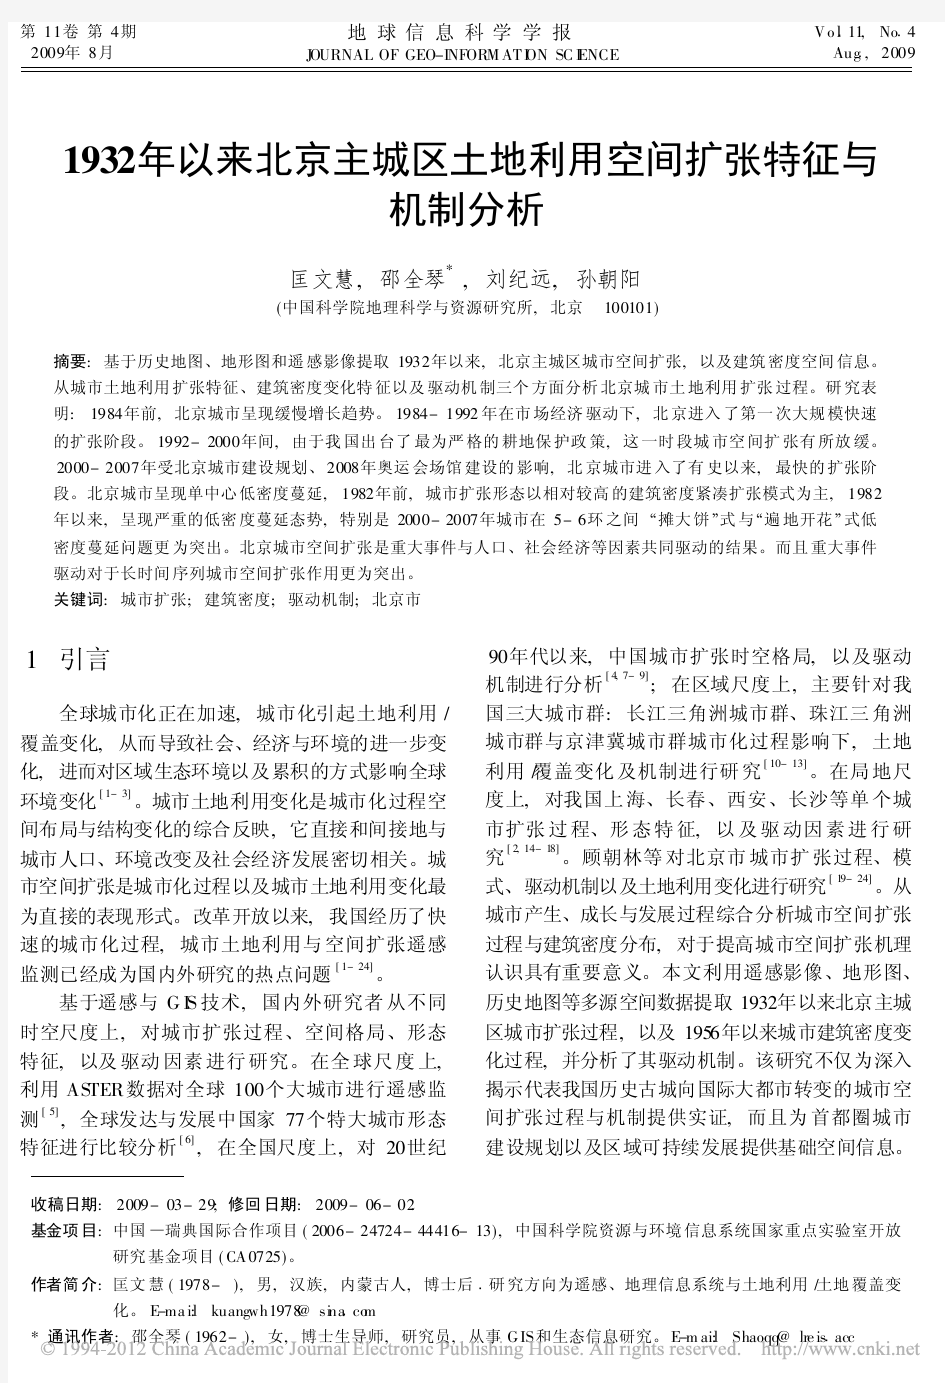 1932年以来北京主城区土地利用空间扩张特征与机制分析